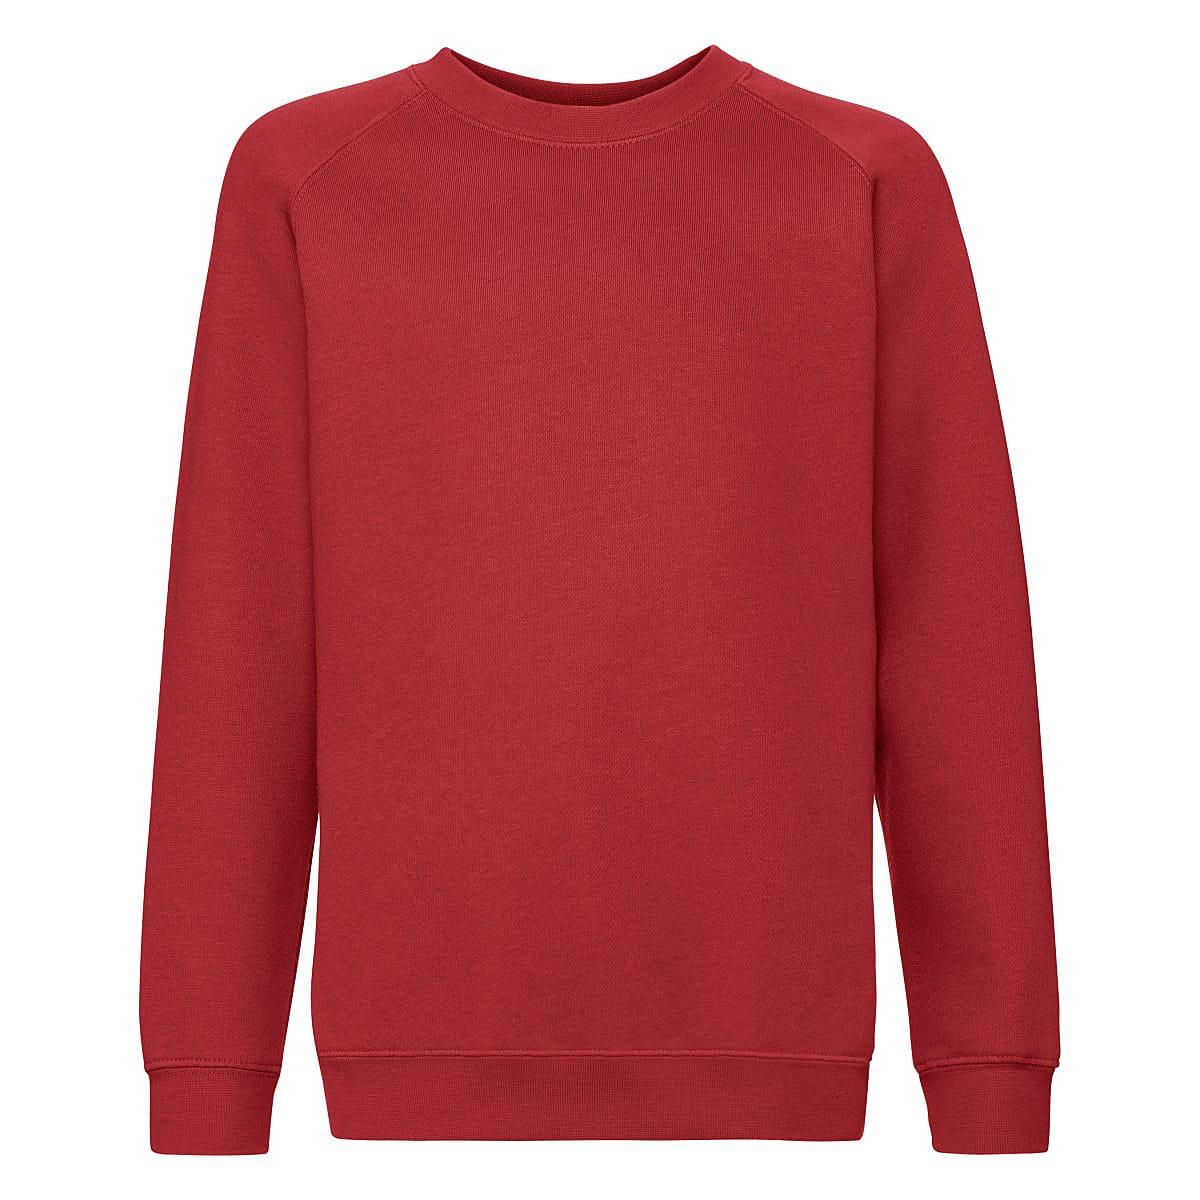 Fruit Of The Loom Childrens Premium Raglan Sleeve Sweatshirt in Red (Product Code: 62033)